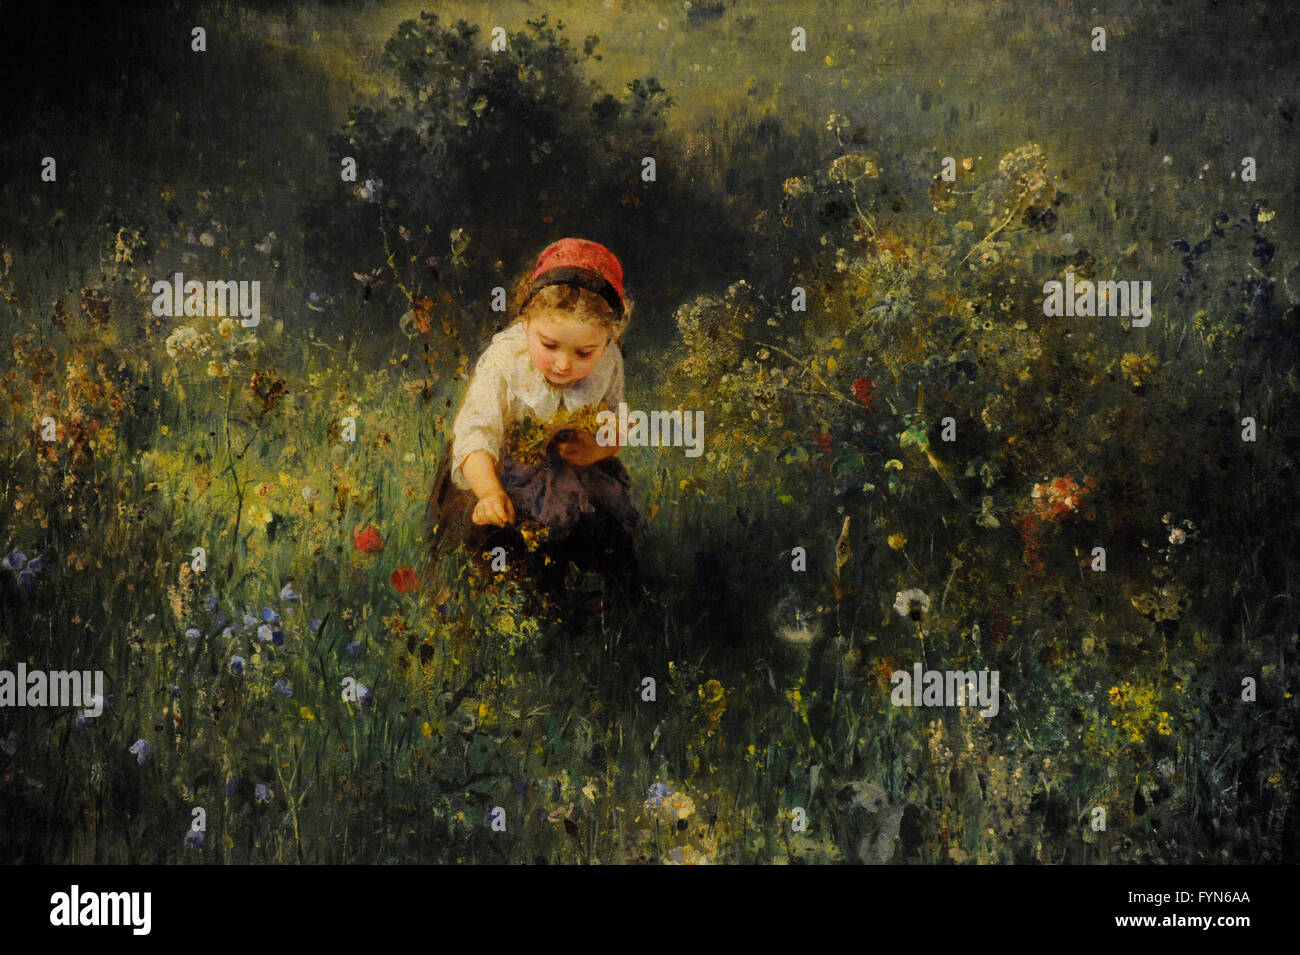 Ludwig Knaus (1829-1910). Deutscher Maler. Mädchen in einem Feld, 1857. Öl auf Leinwand. Die Eremitage. Sankt Petersburg. Russland. Stockfoto